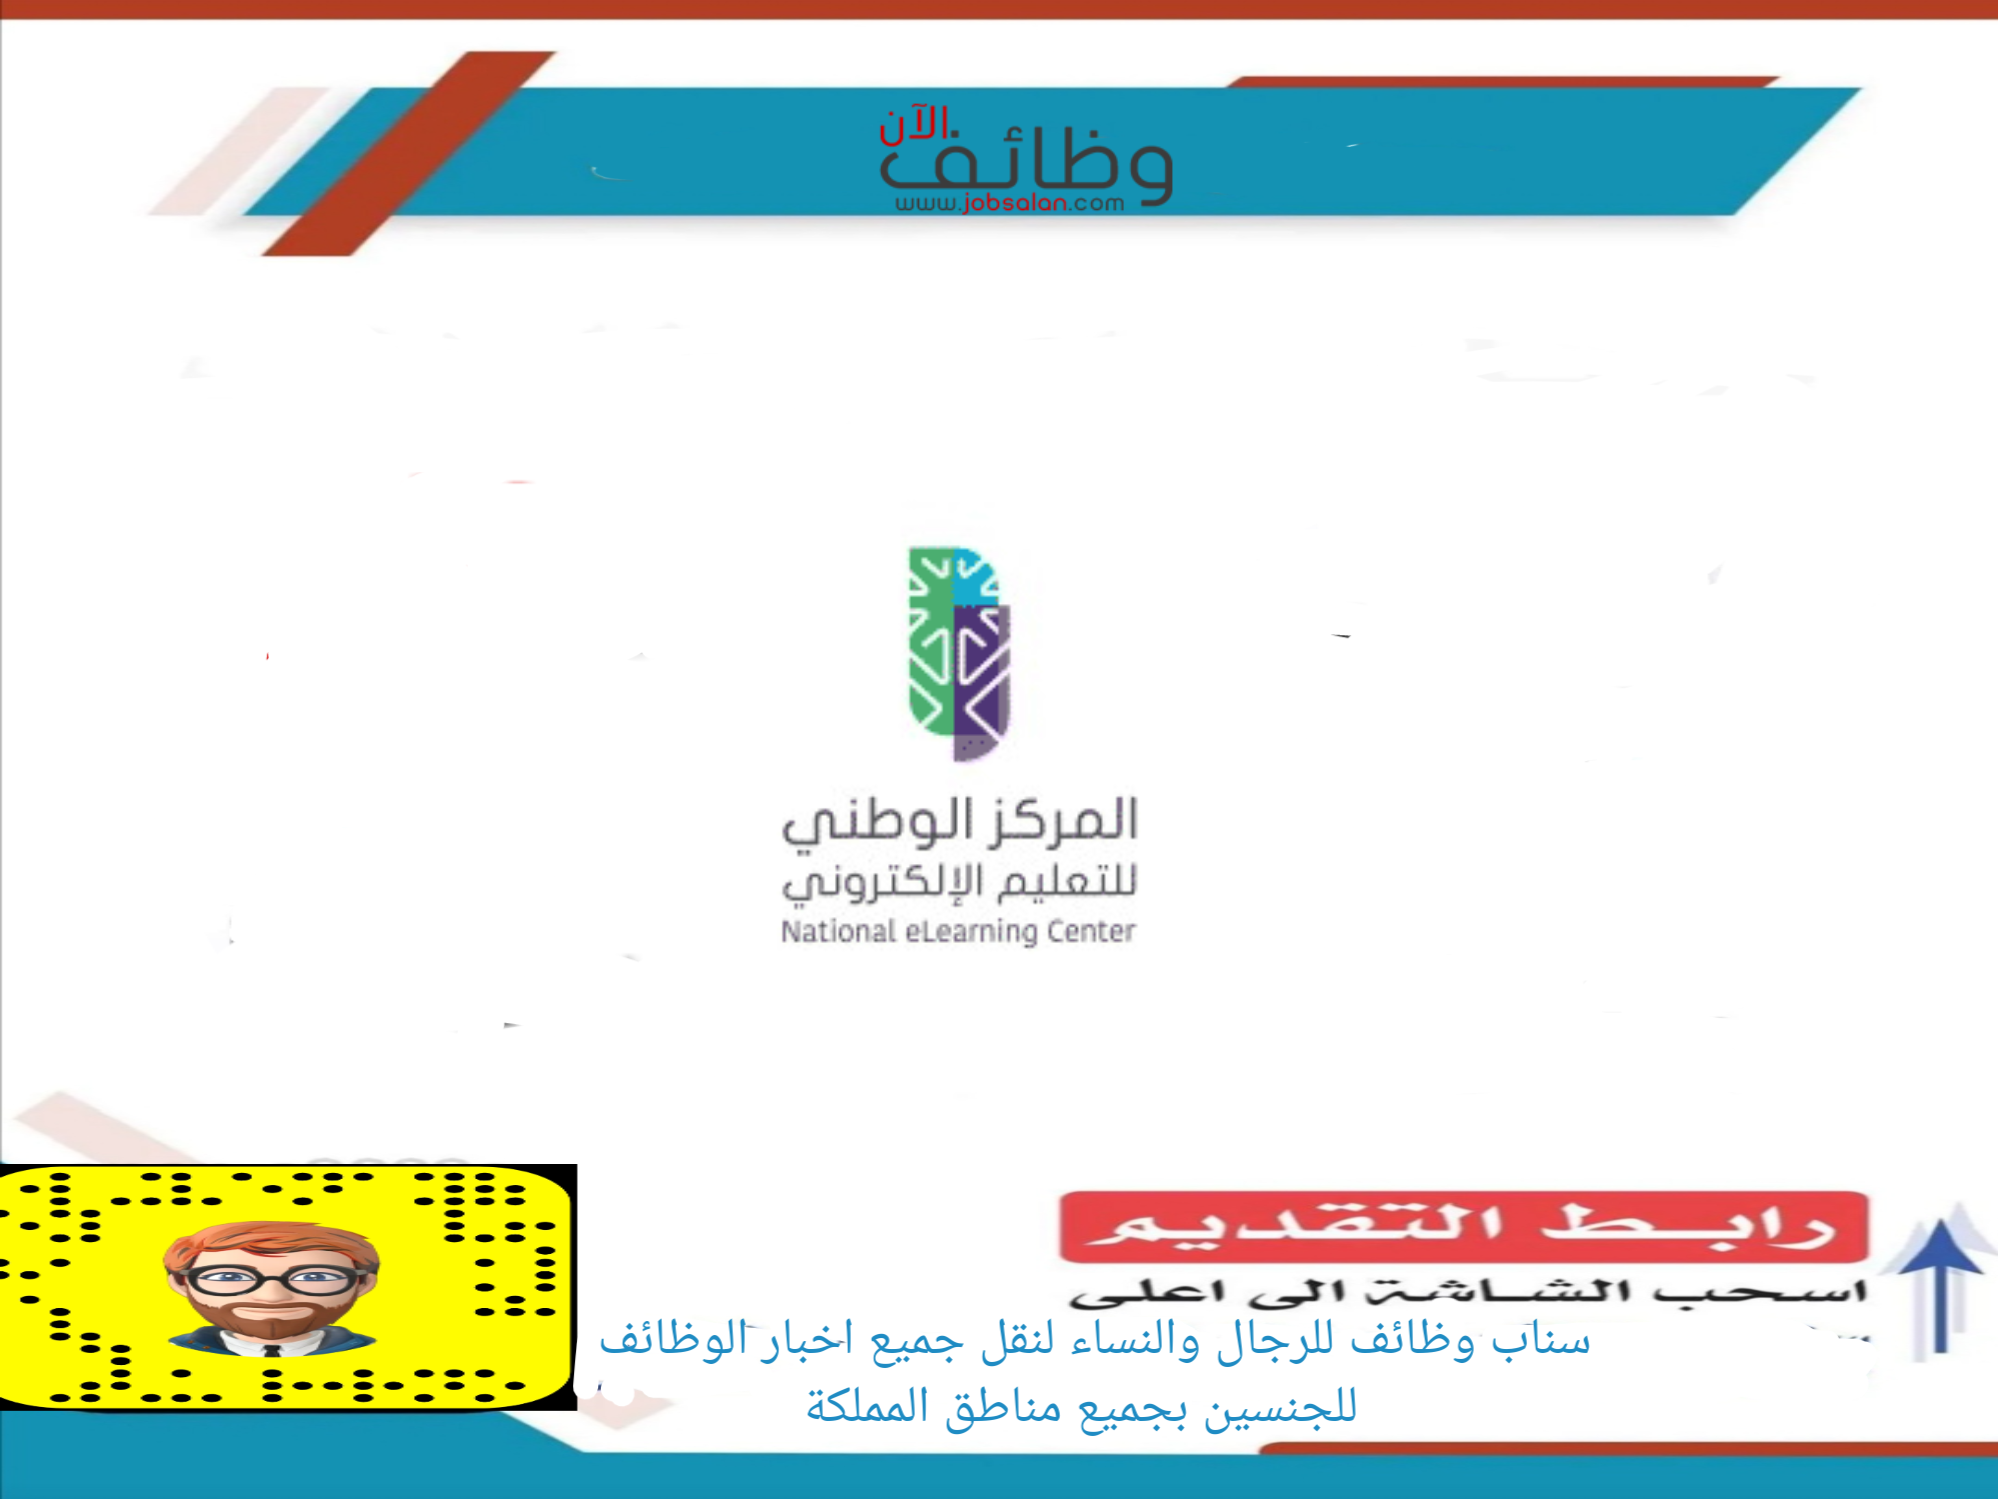 المركز الوطني للتعليم الإلكتروني 1 - مطلوب أخصائي نظم تعليمية في المركز الوطني للتعليم الإلكتروني - الرياض